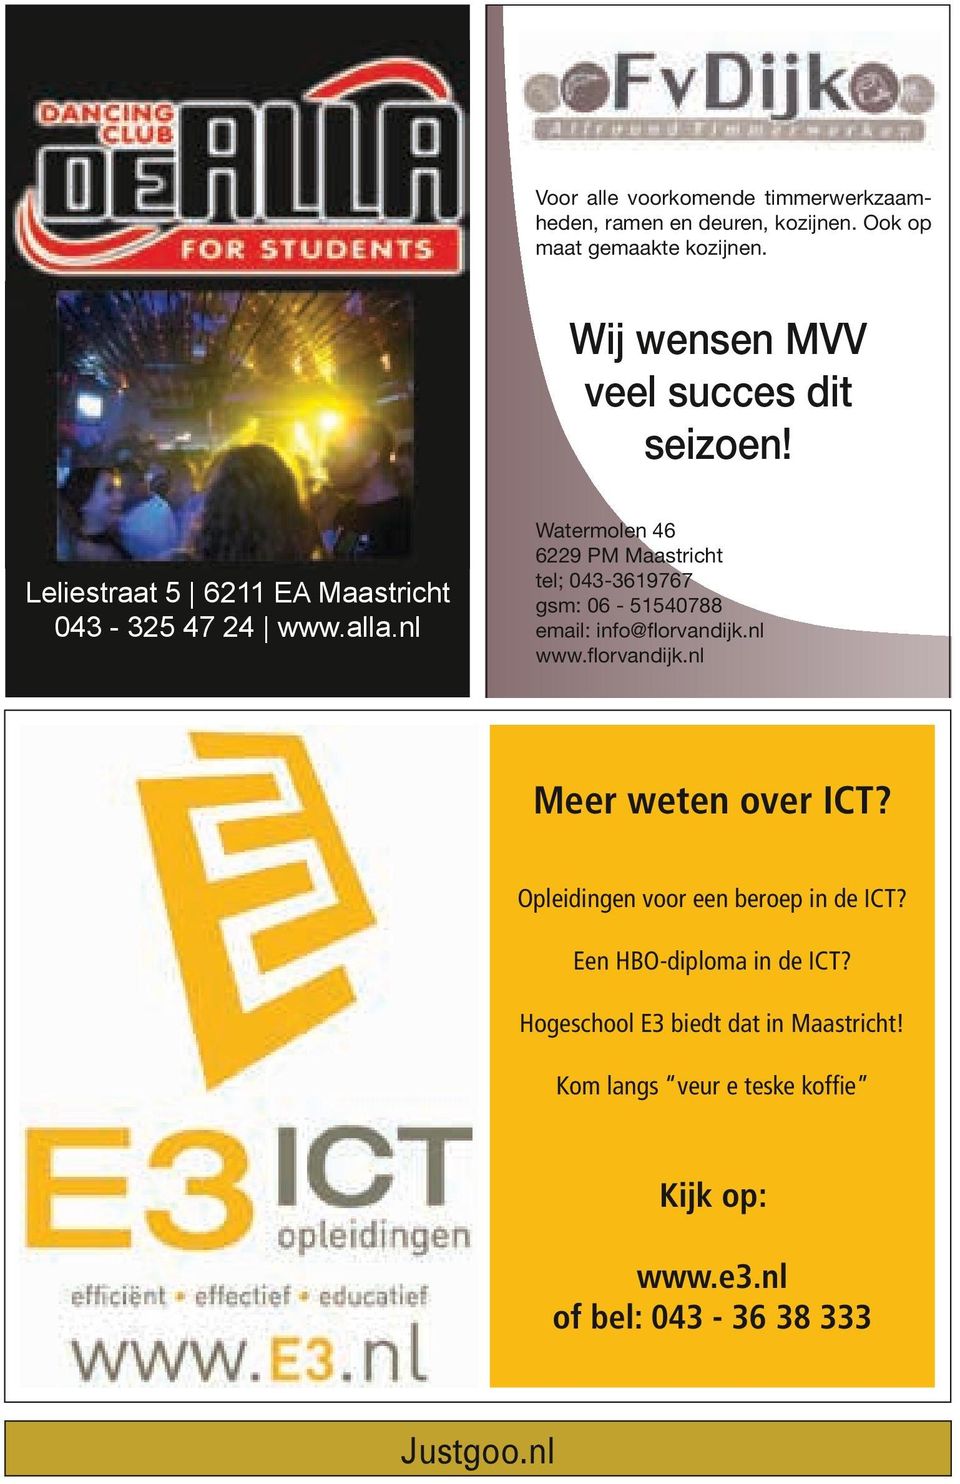 nl www.florvandijk.nl Meer weten over ICT? 113249.pdf 1 24-10-2013 0113236.pdf 11:24:19 1 3-10-2013 11:16:47 Opleidingen voor een beroep in de ICT?